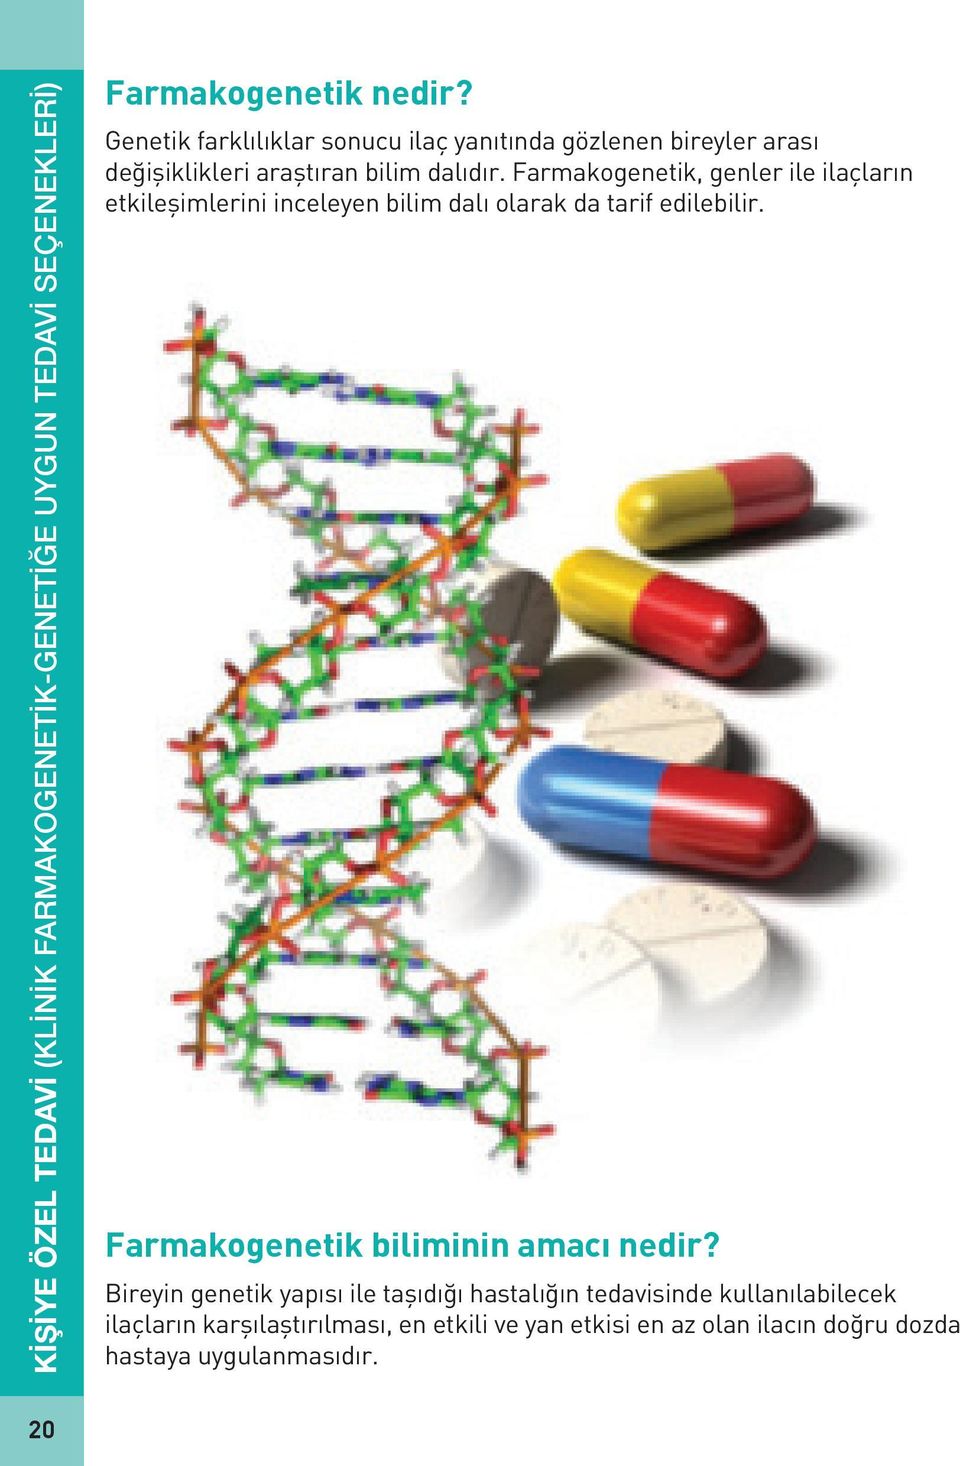 Farmakogenetik, genler ile ilaçların etkileşimlerini inceleyen bilim dalı olarak da tarif edilebilir.